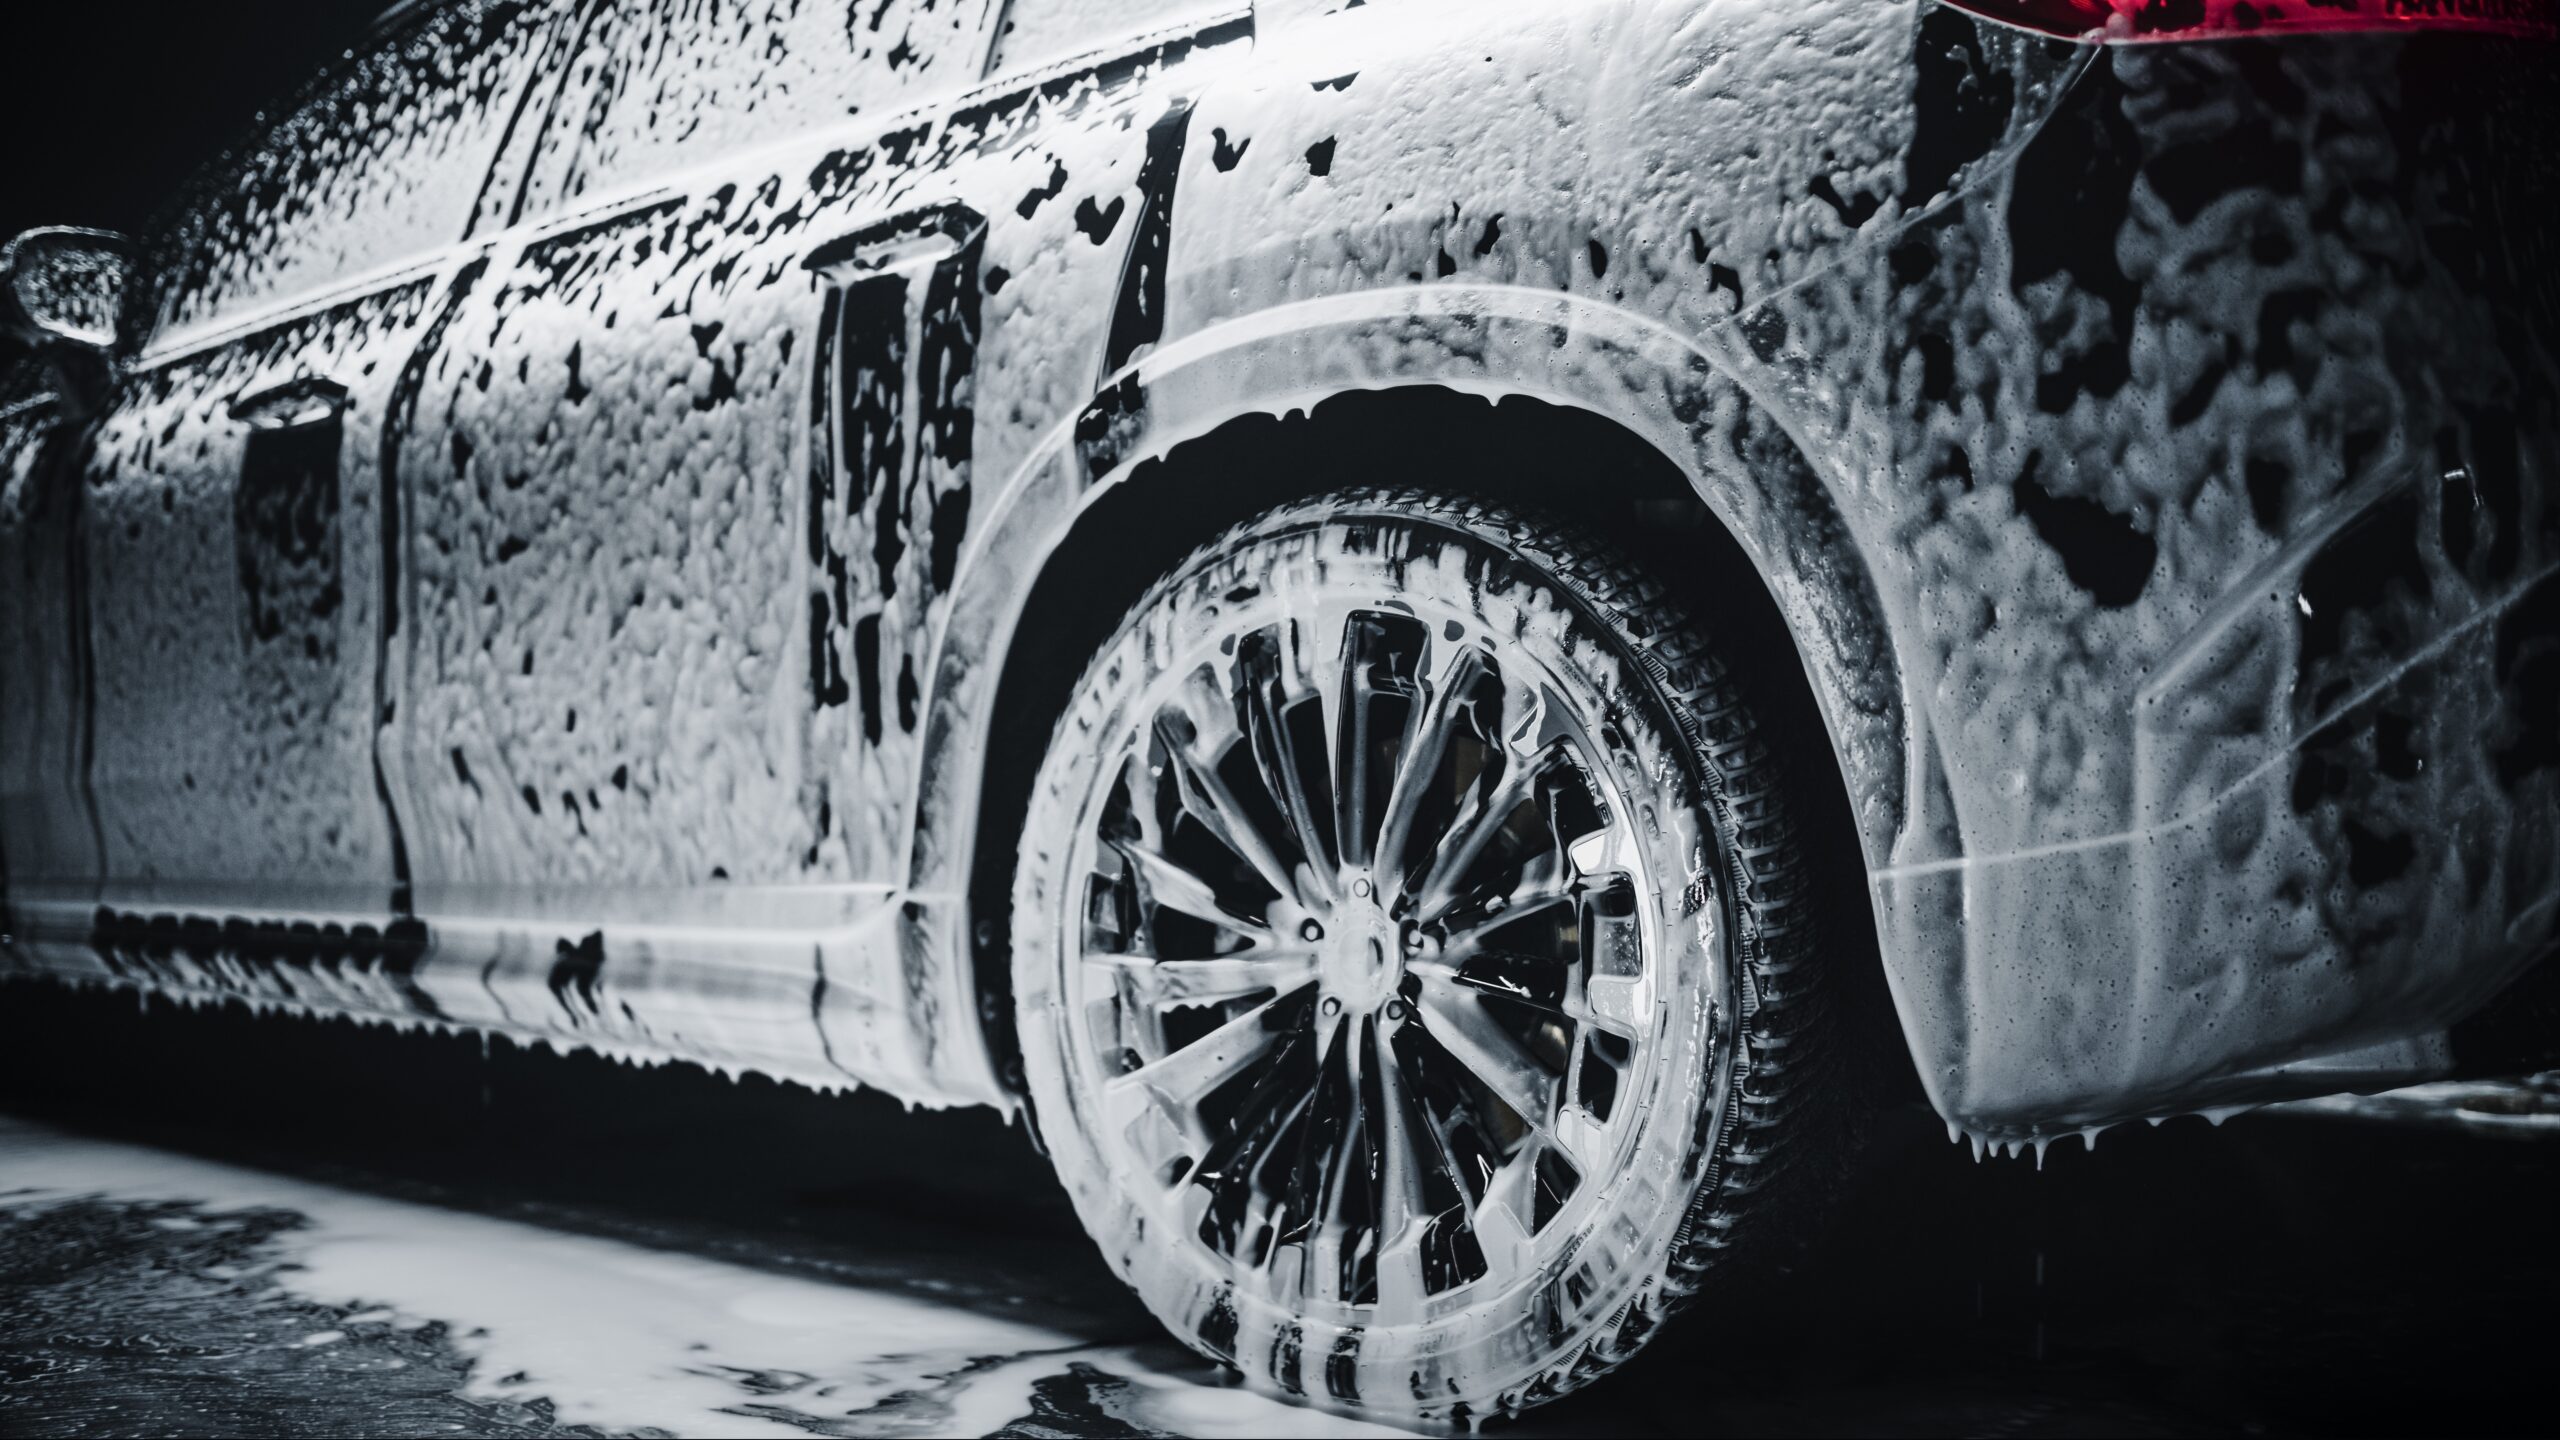 Foam cleaning car wash